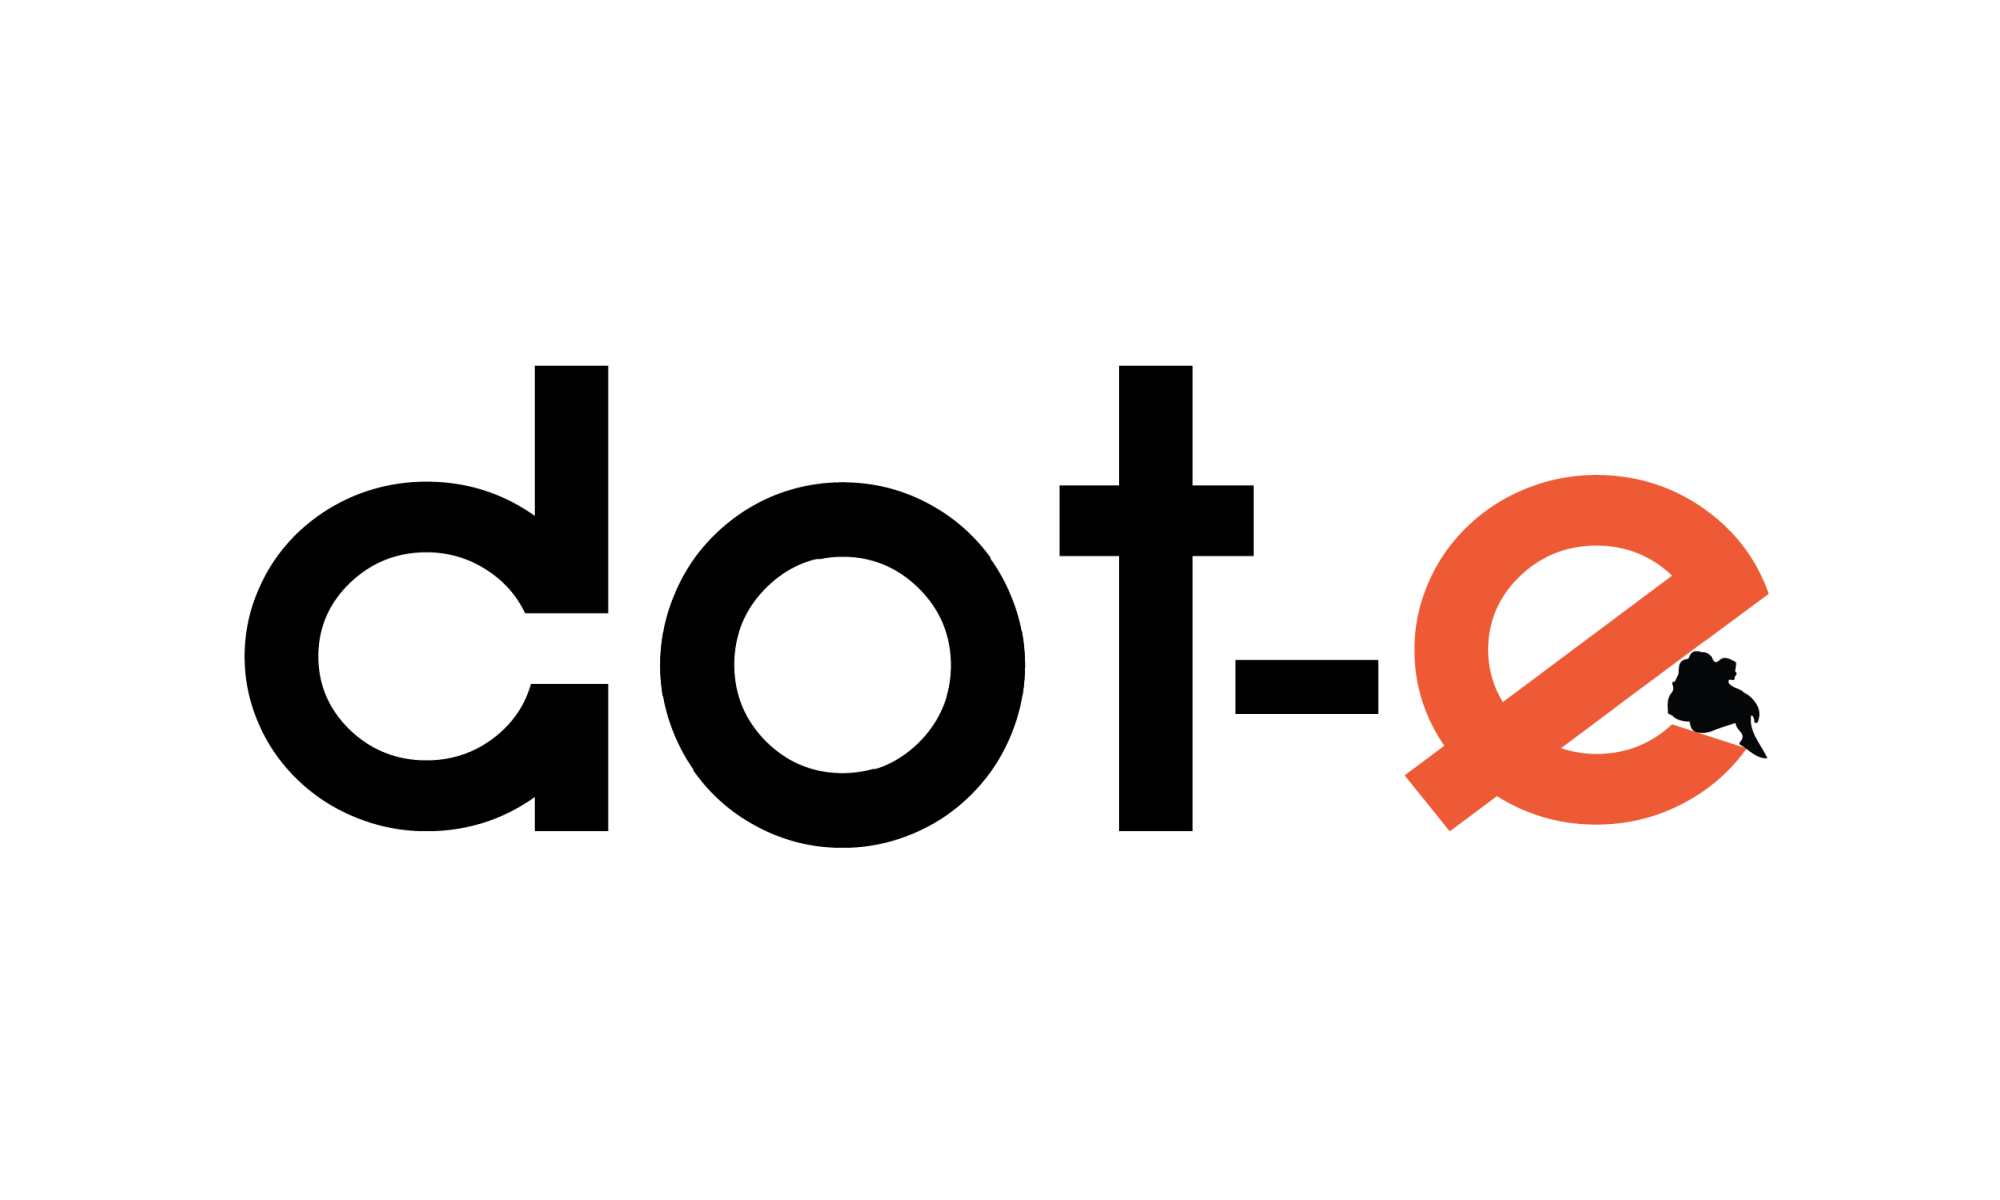 Dot.Blog Logo - How Dot E Was Born